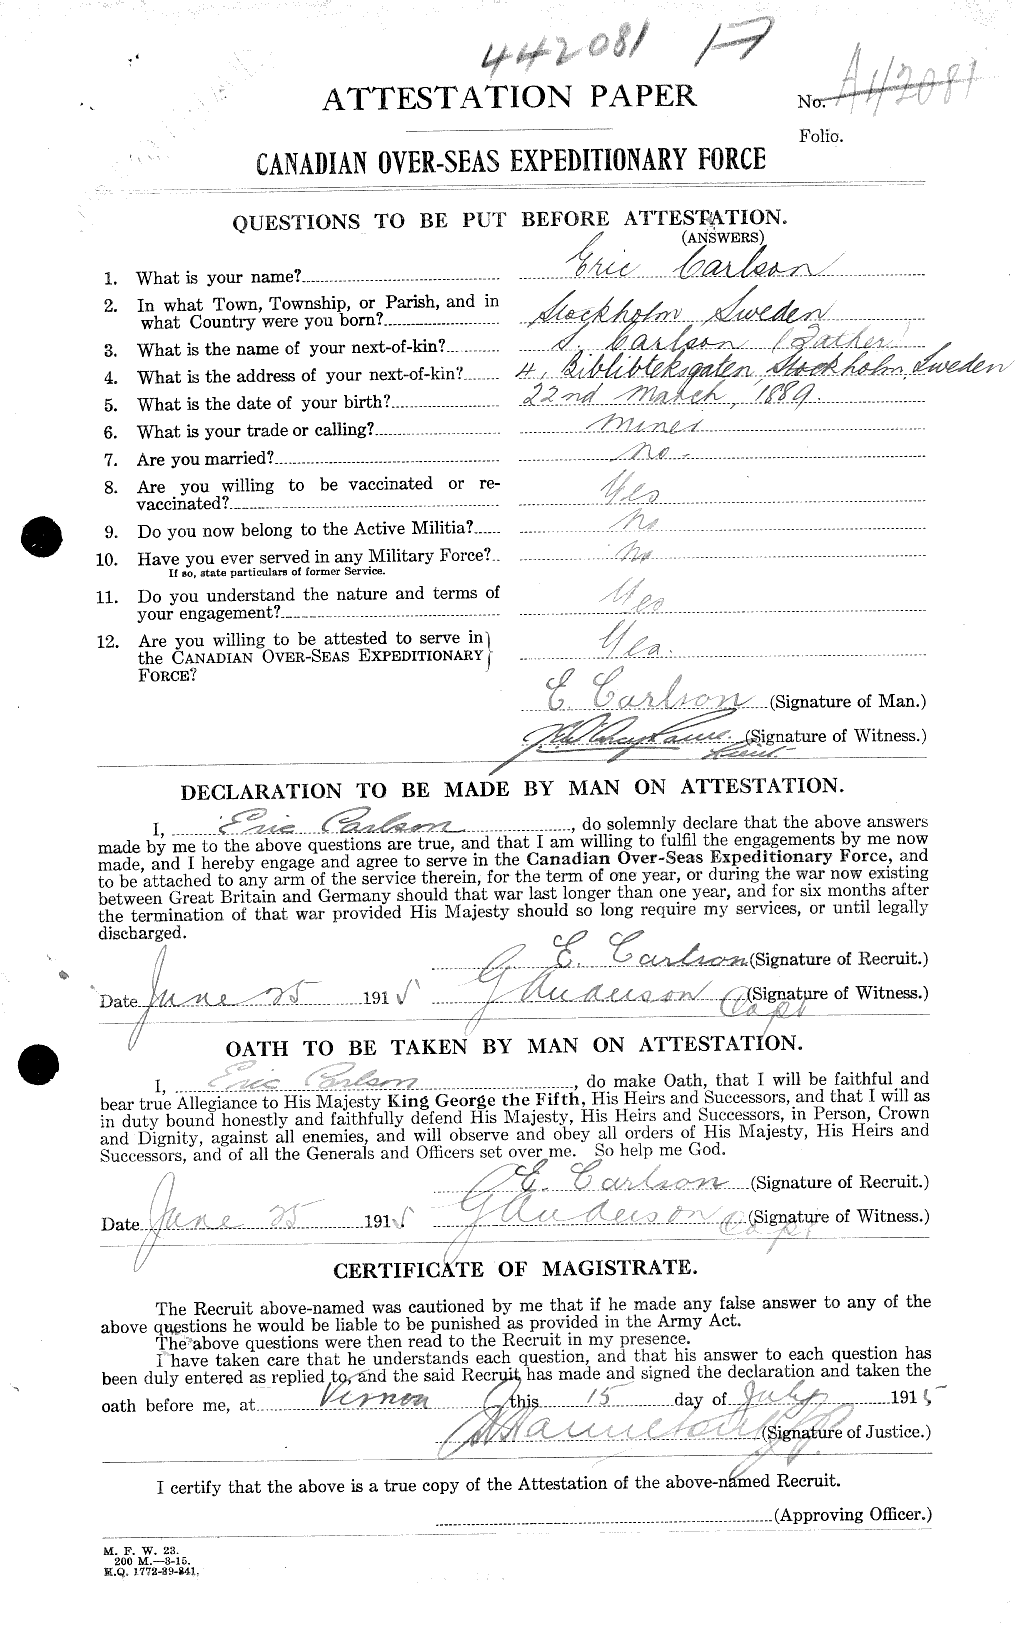 Dossiers du Personnel de la Première Guerre mondiale - CEC 004533a